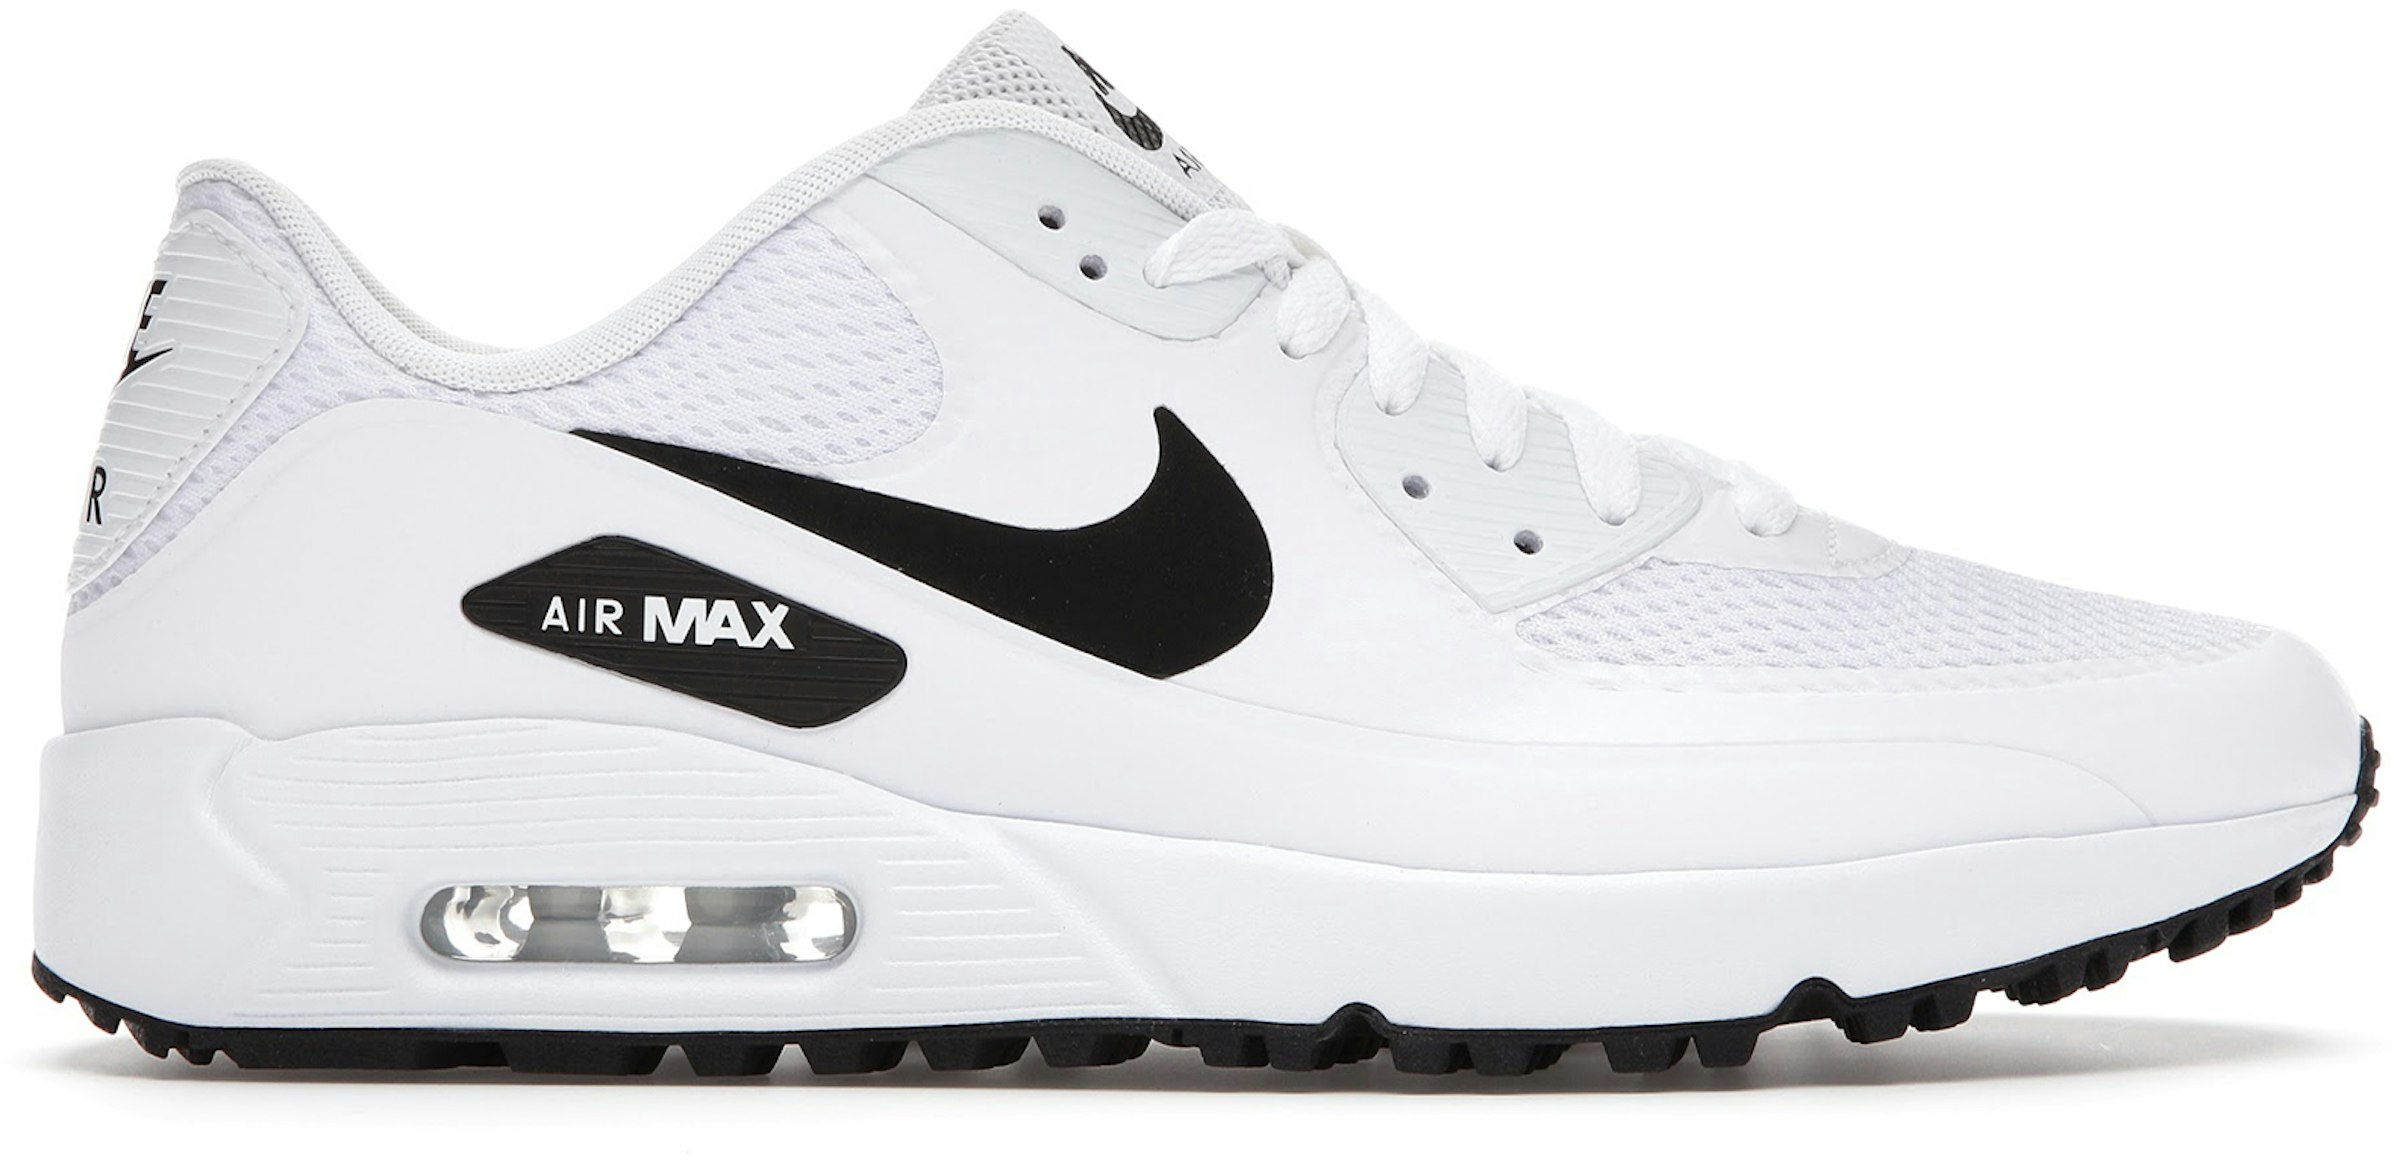 Nike Air Max Golf White Black - CU9978-101 - US